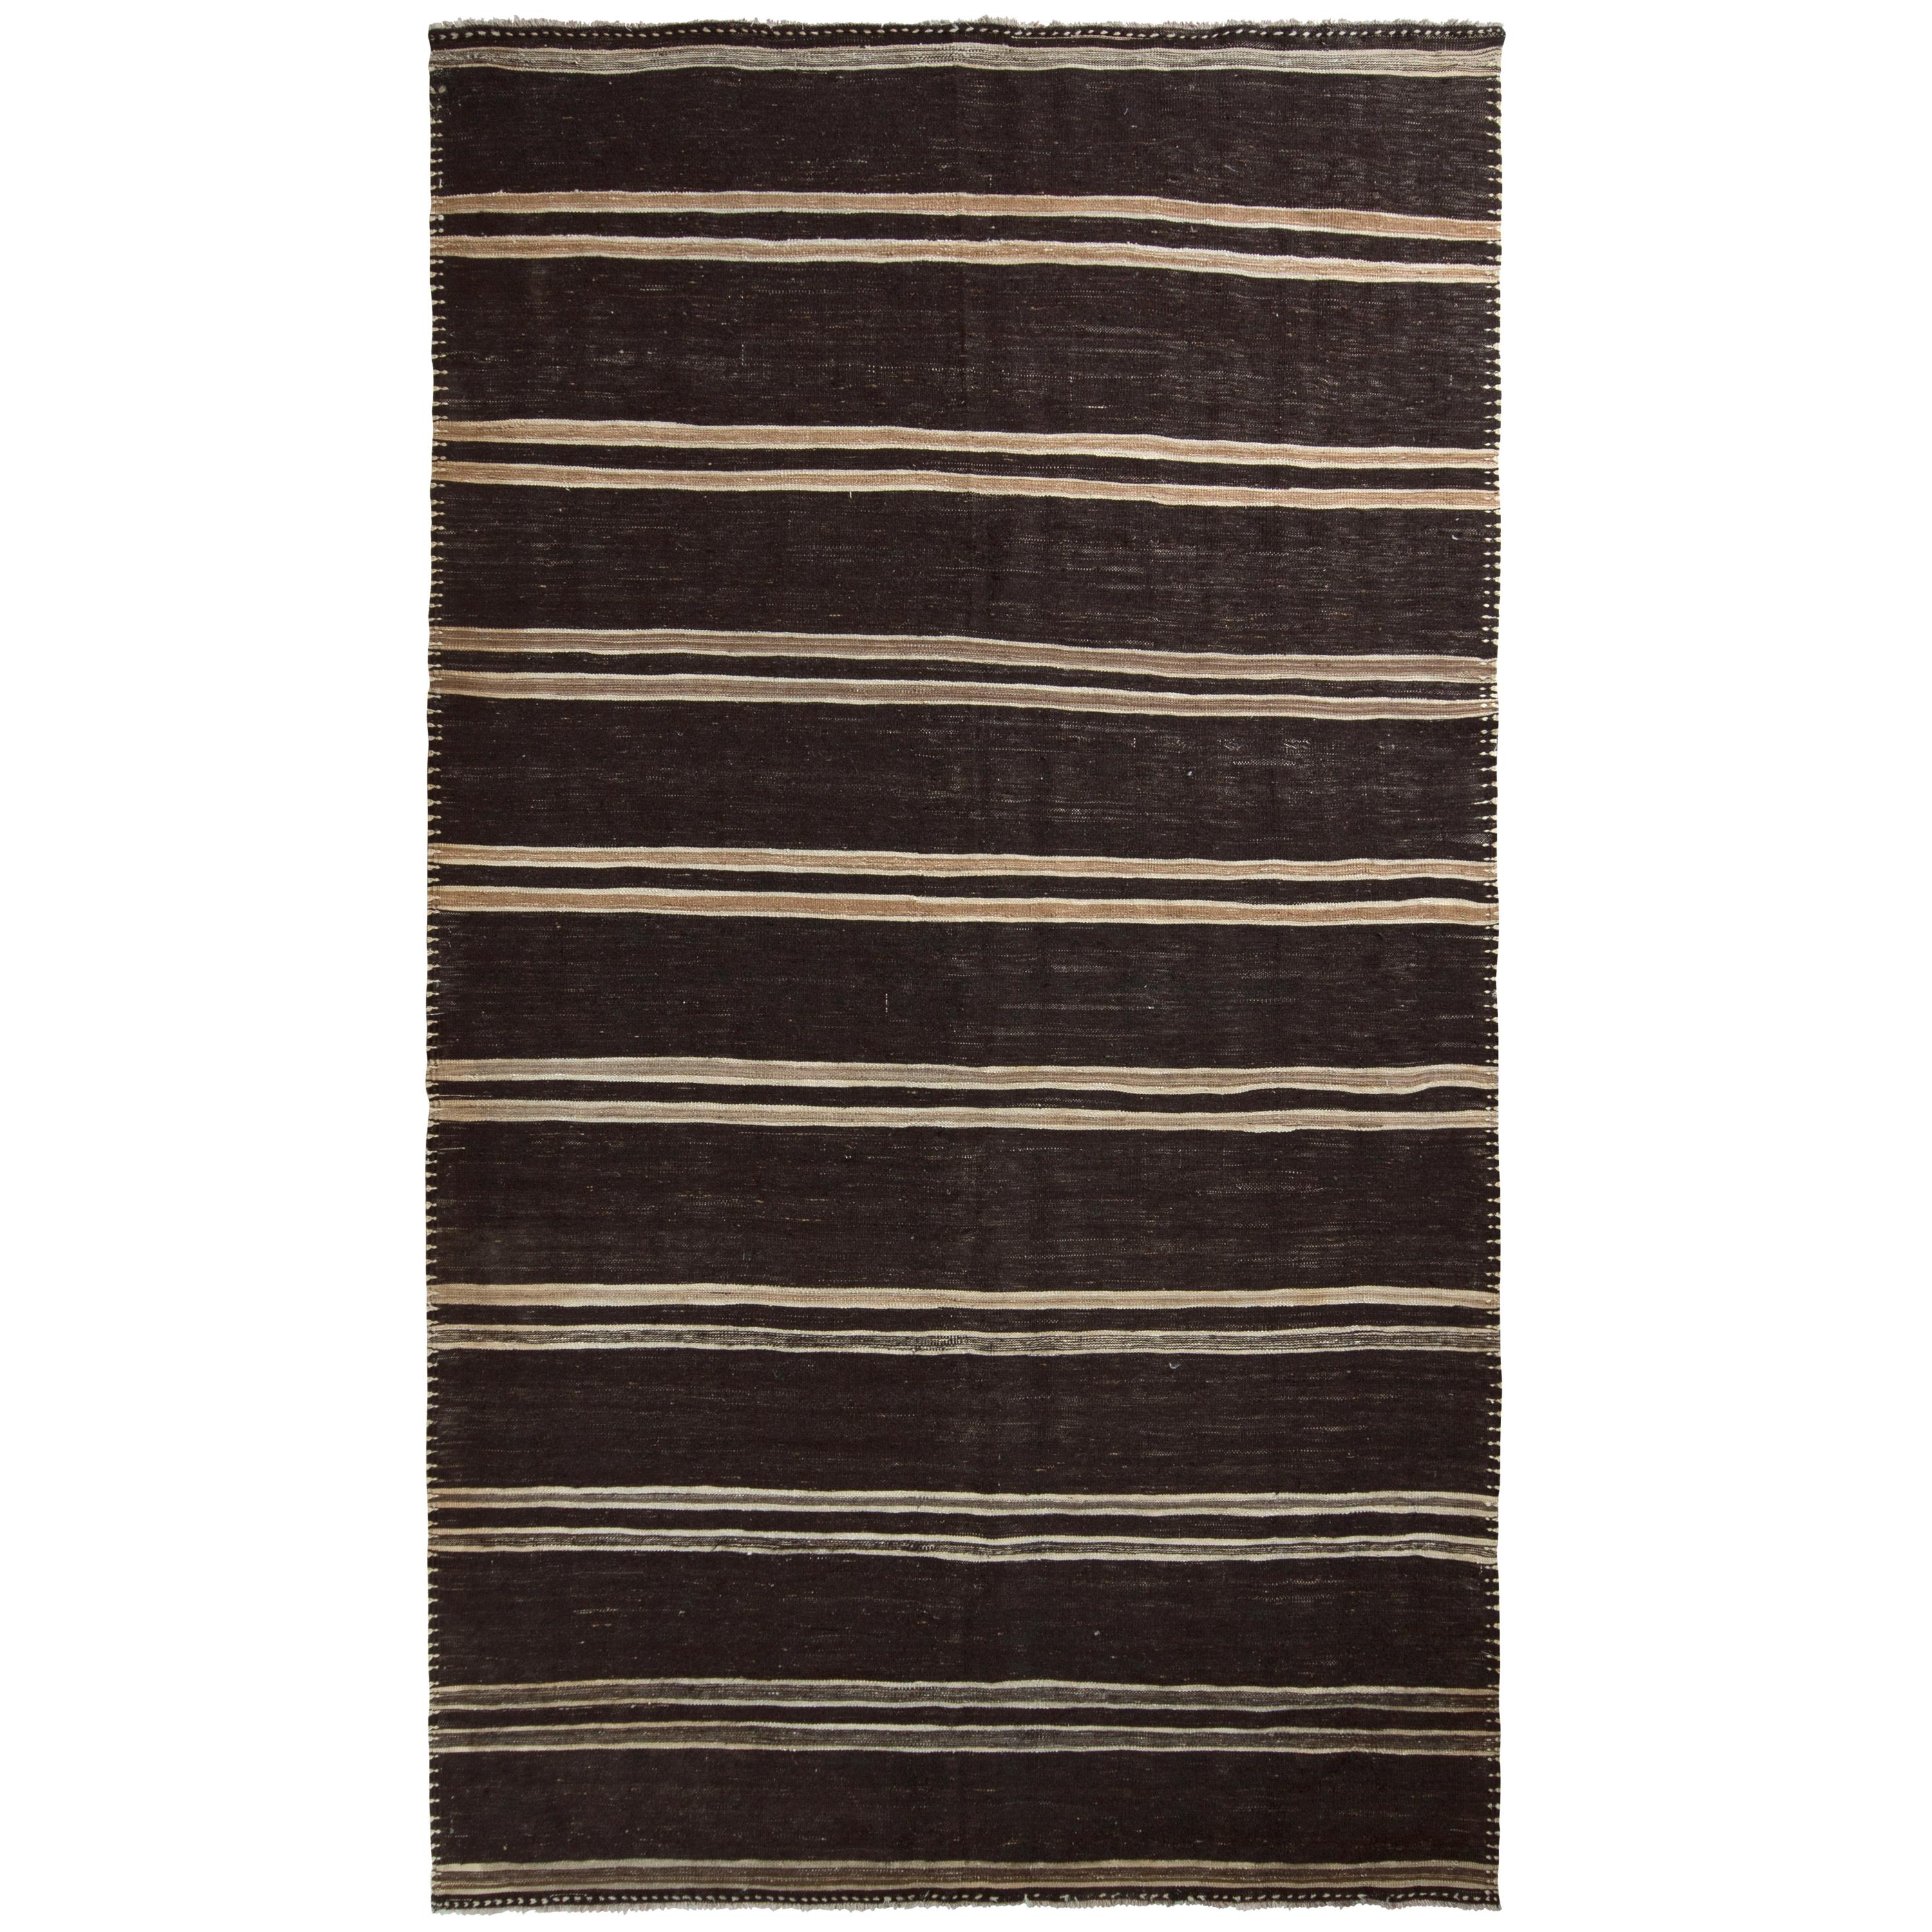 Handmade Midcentury Vintage Kilim in Beige Brown Striped Pattern by Rug & Kilim